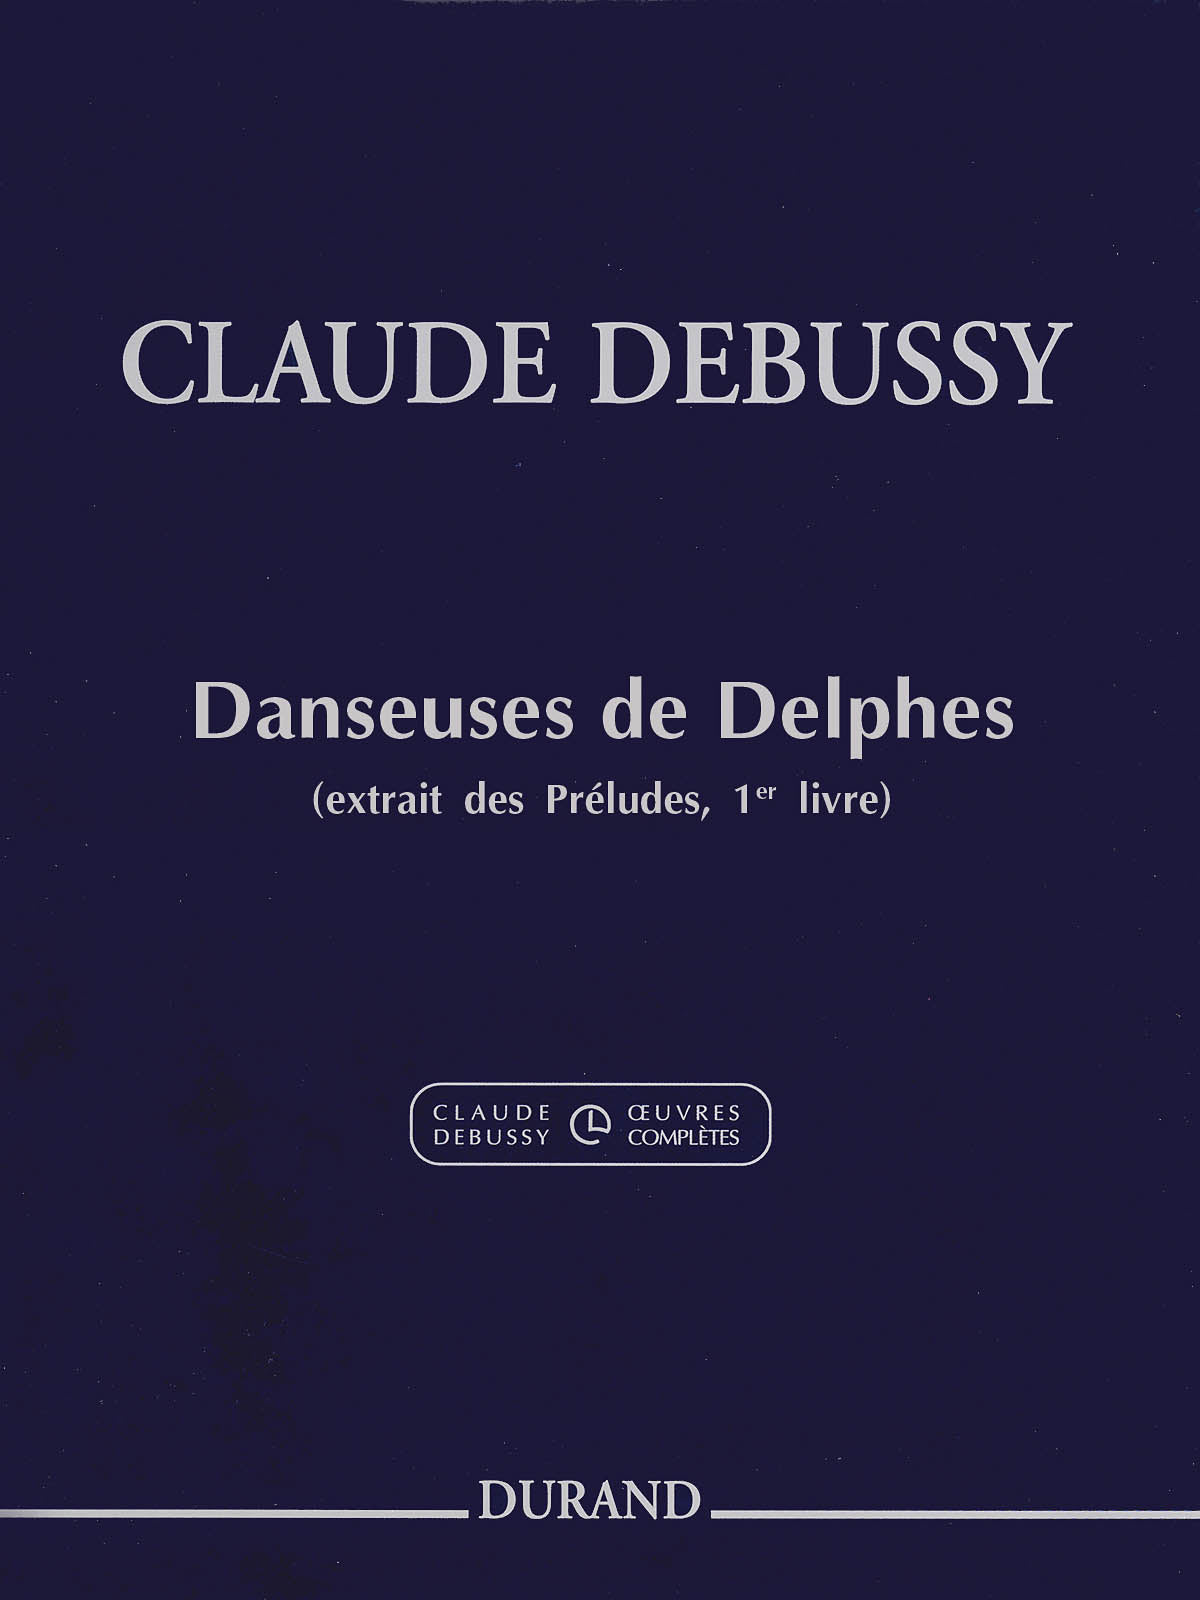 Debussy: Danseuses de Delphes